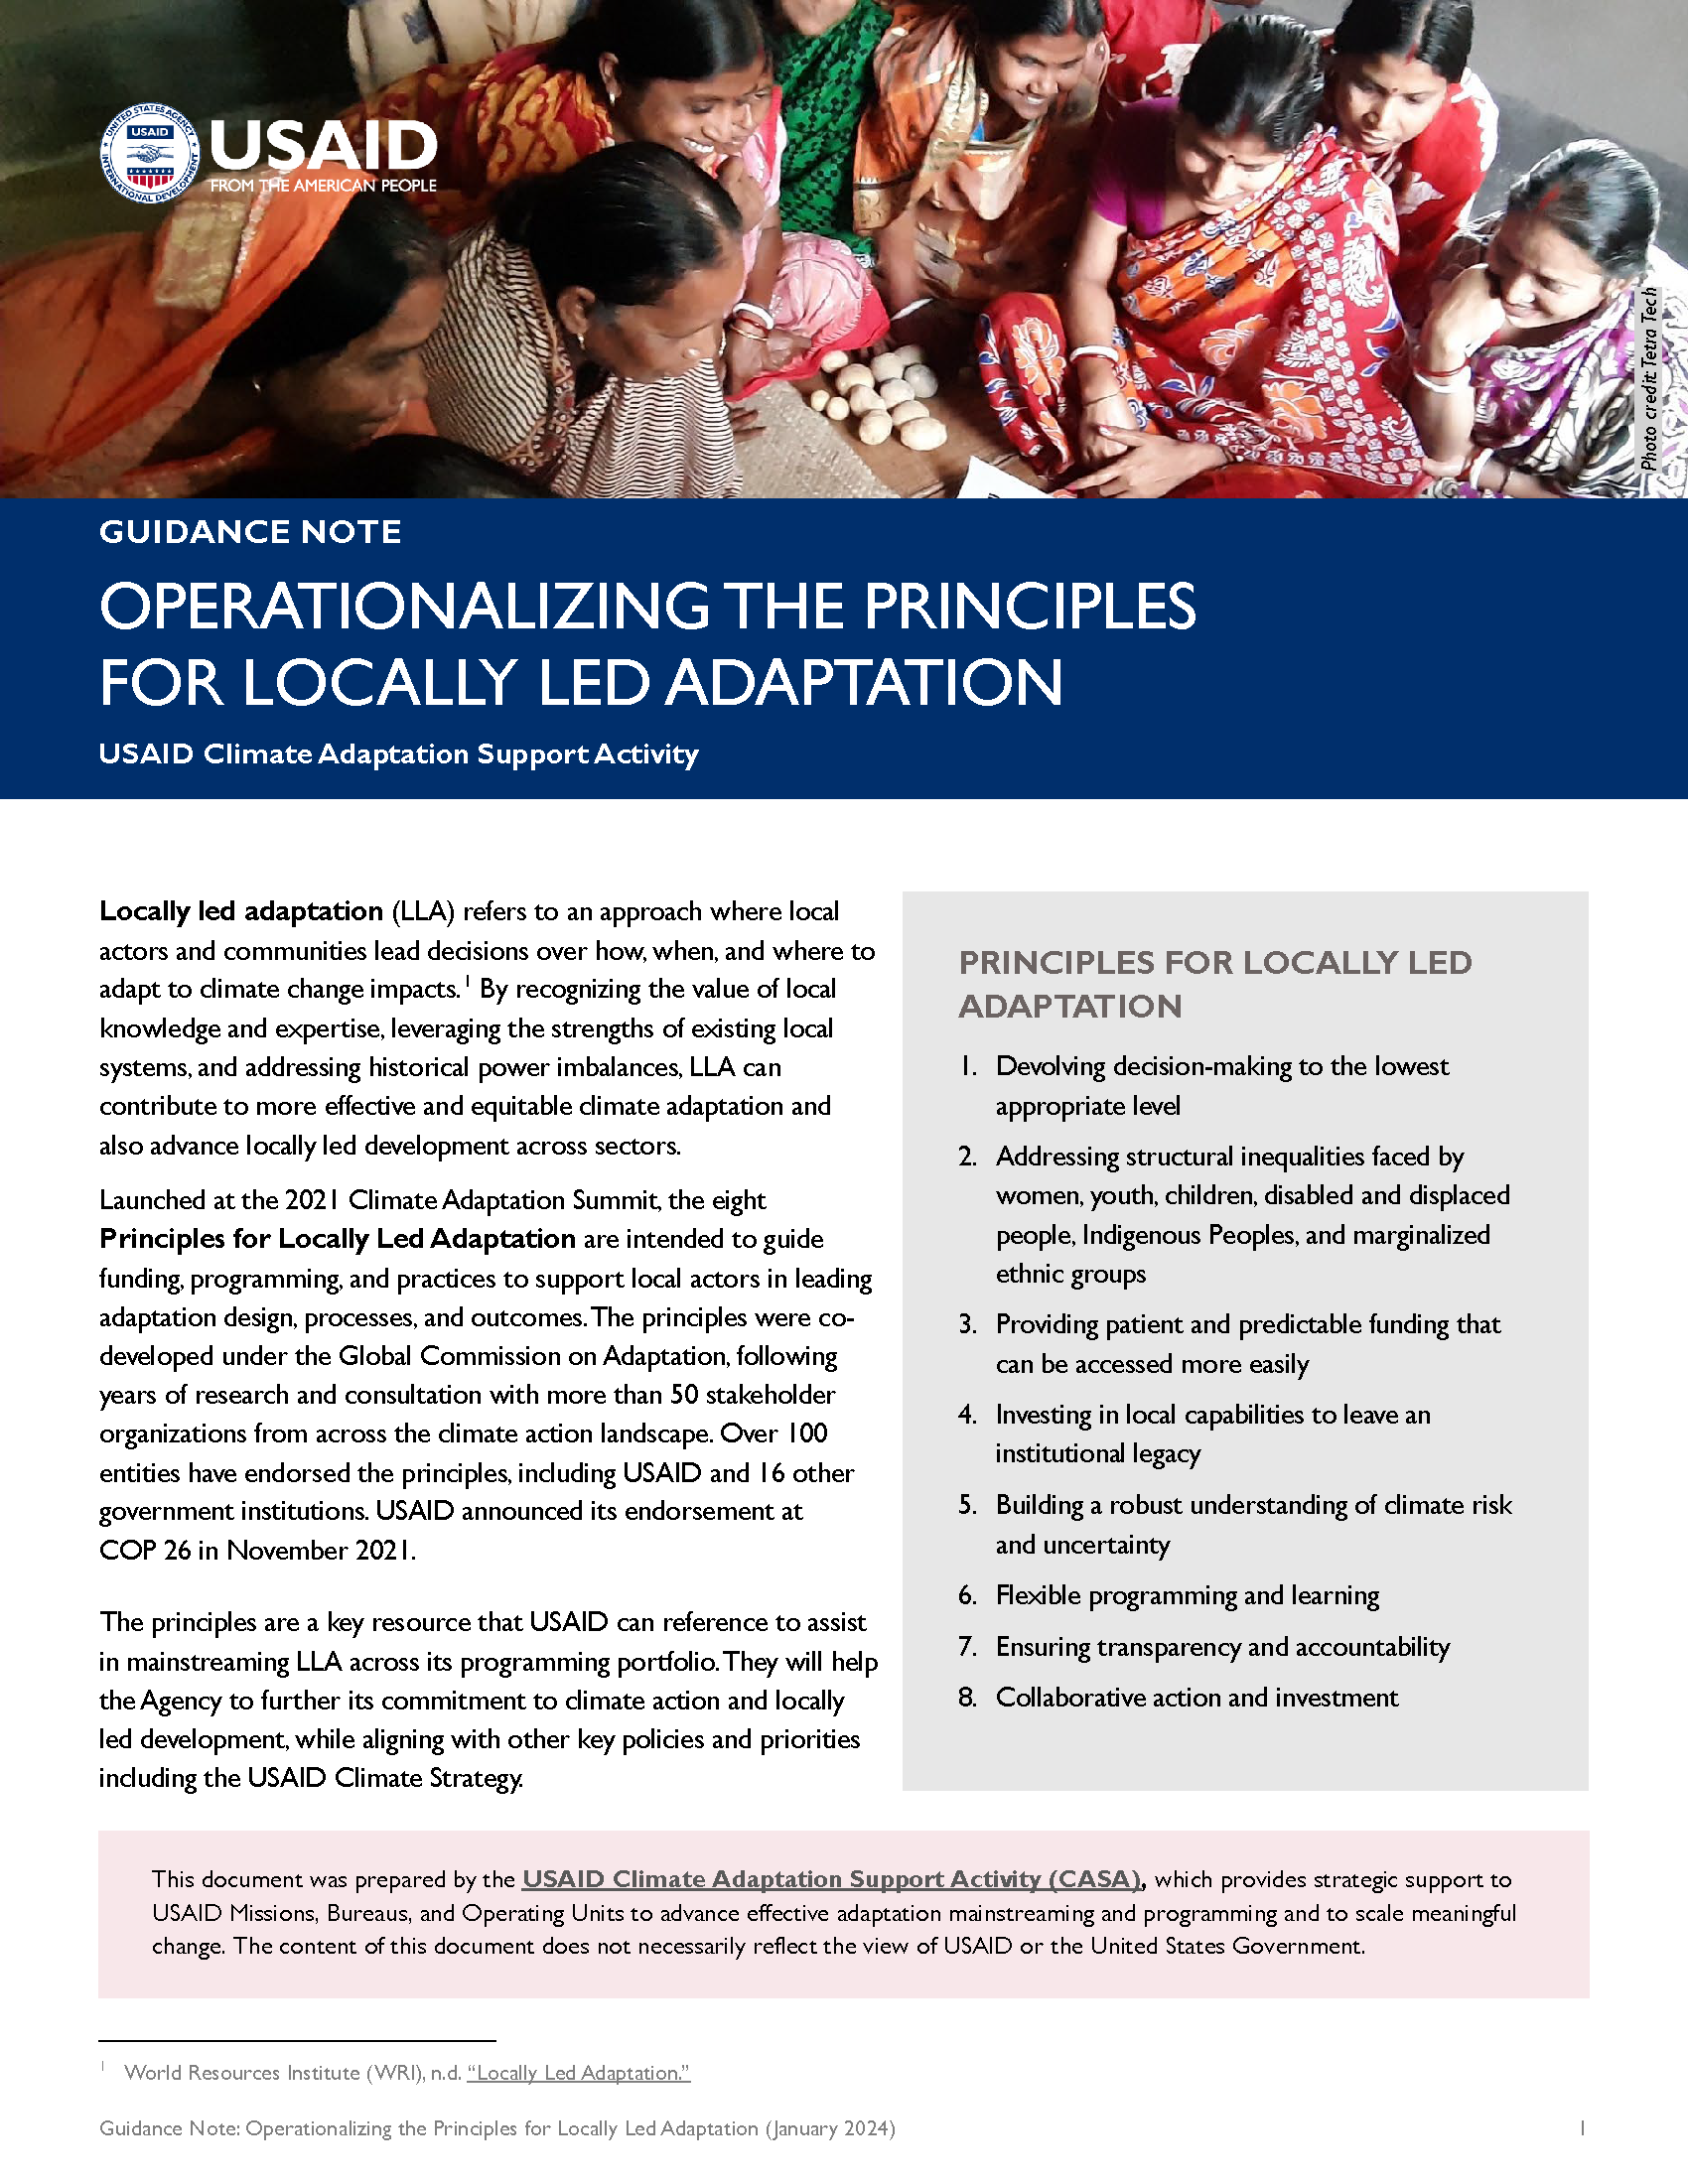 Page de couverture pour la mise en œuvre des principes d'adaptation menée localement